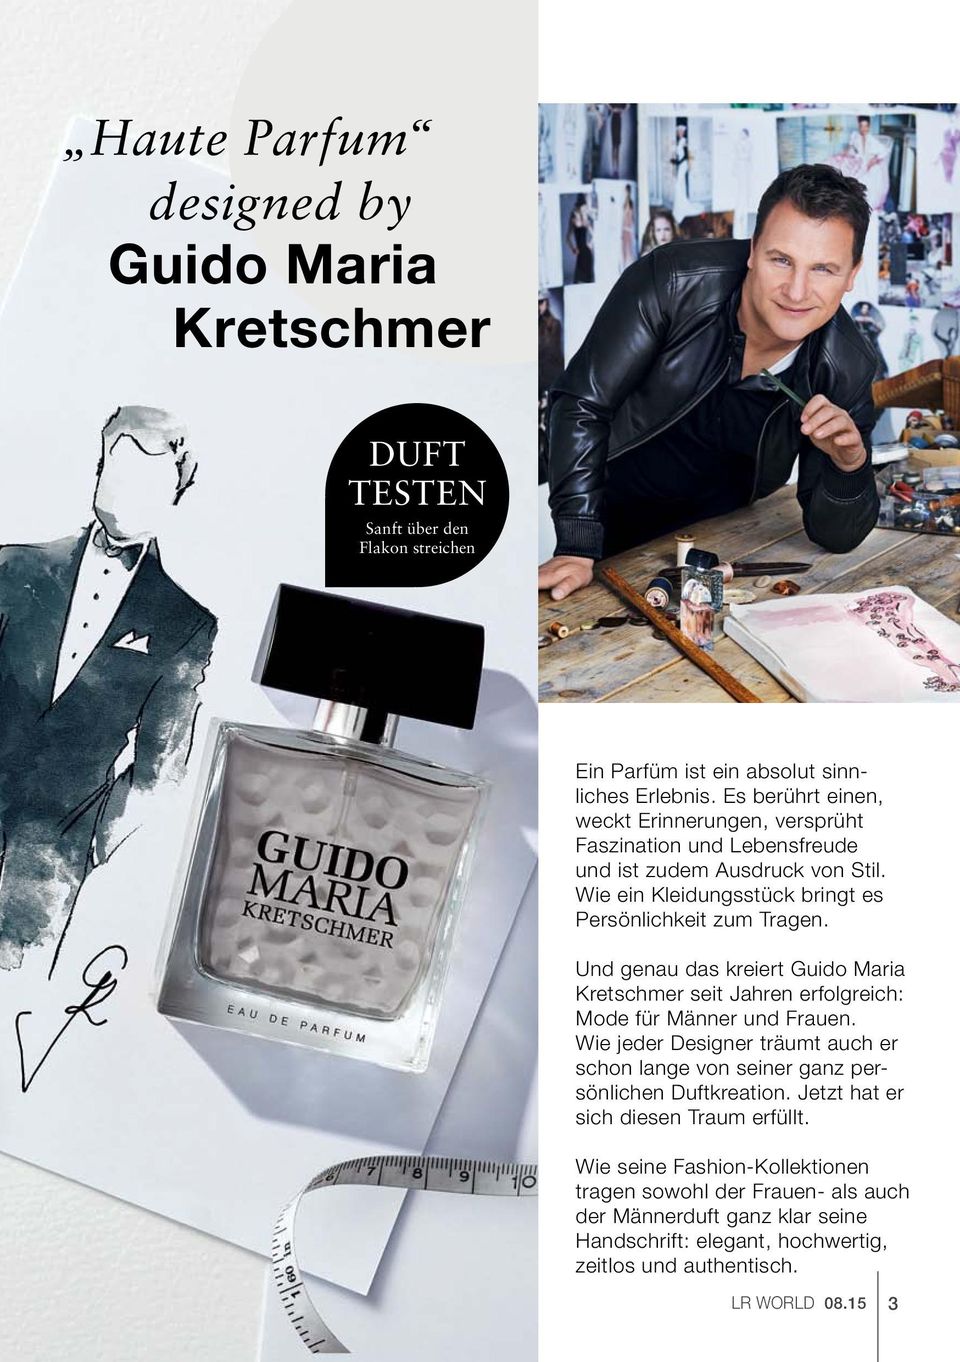 Und genau das kreiert Guido Maria Kretschmer seit Jahren erfolgreich: Mode für Männer und Frauen.